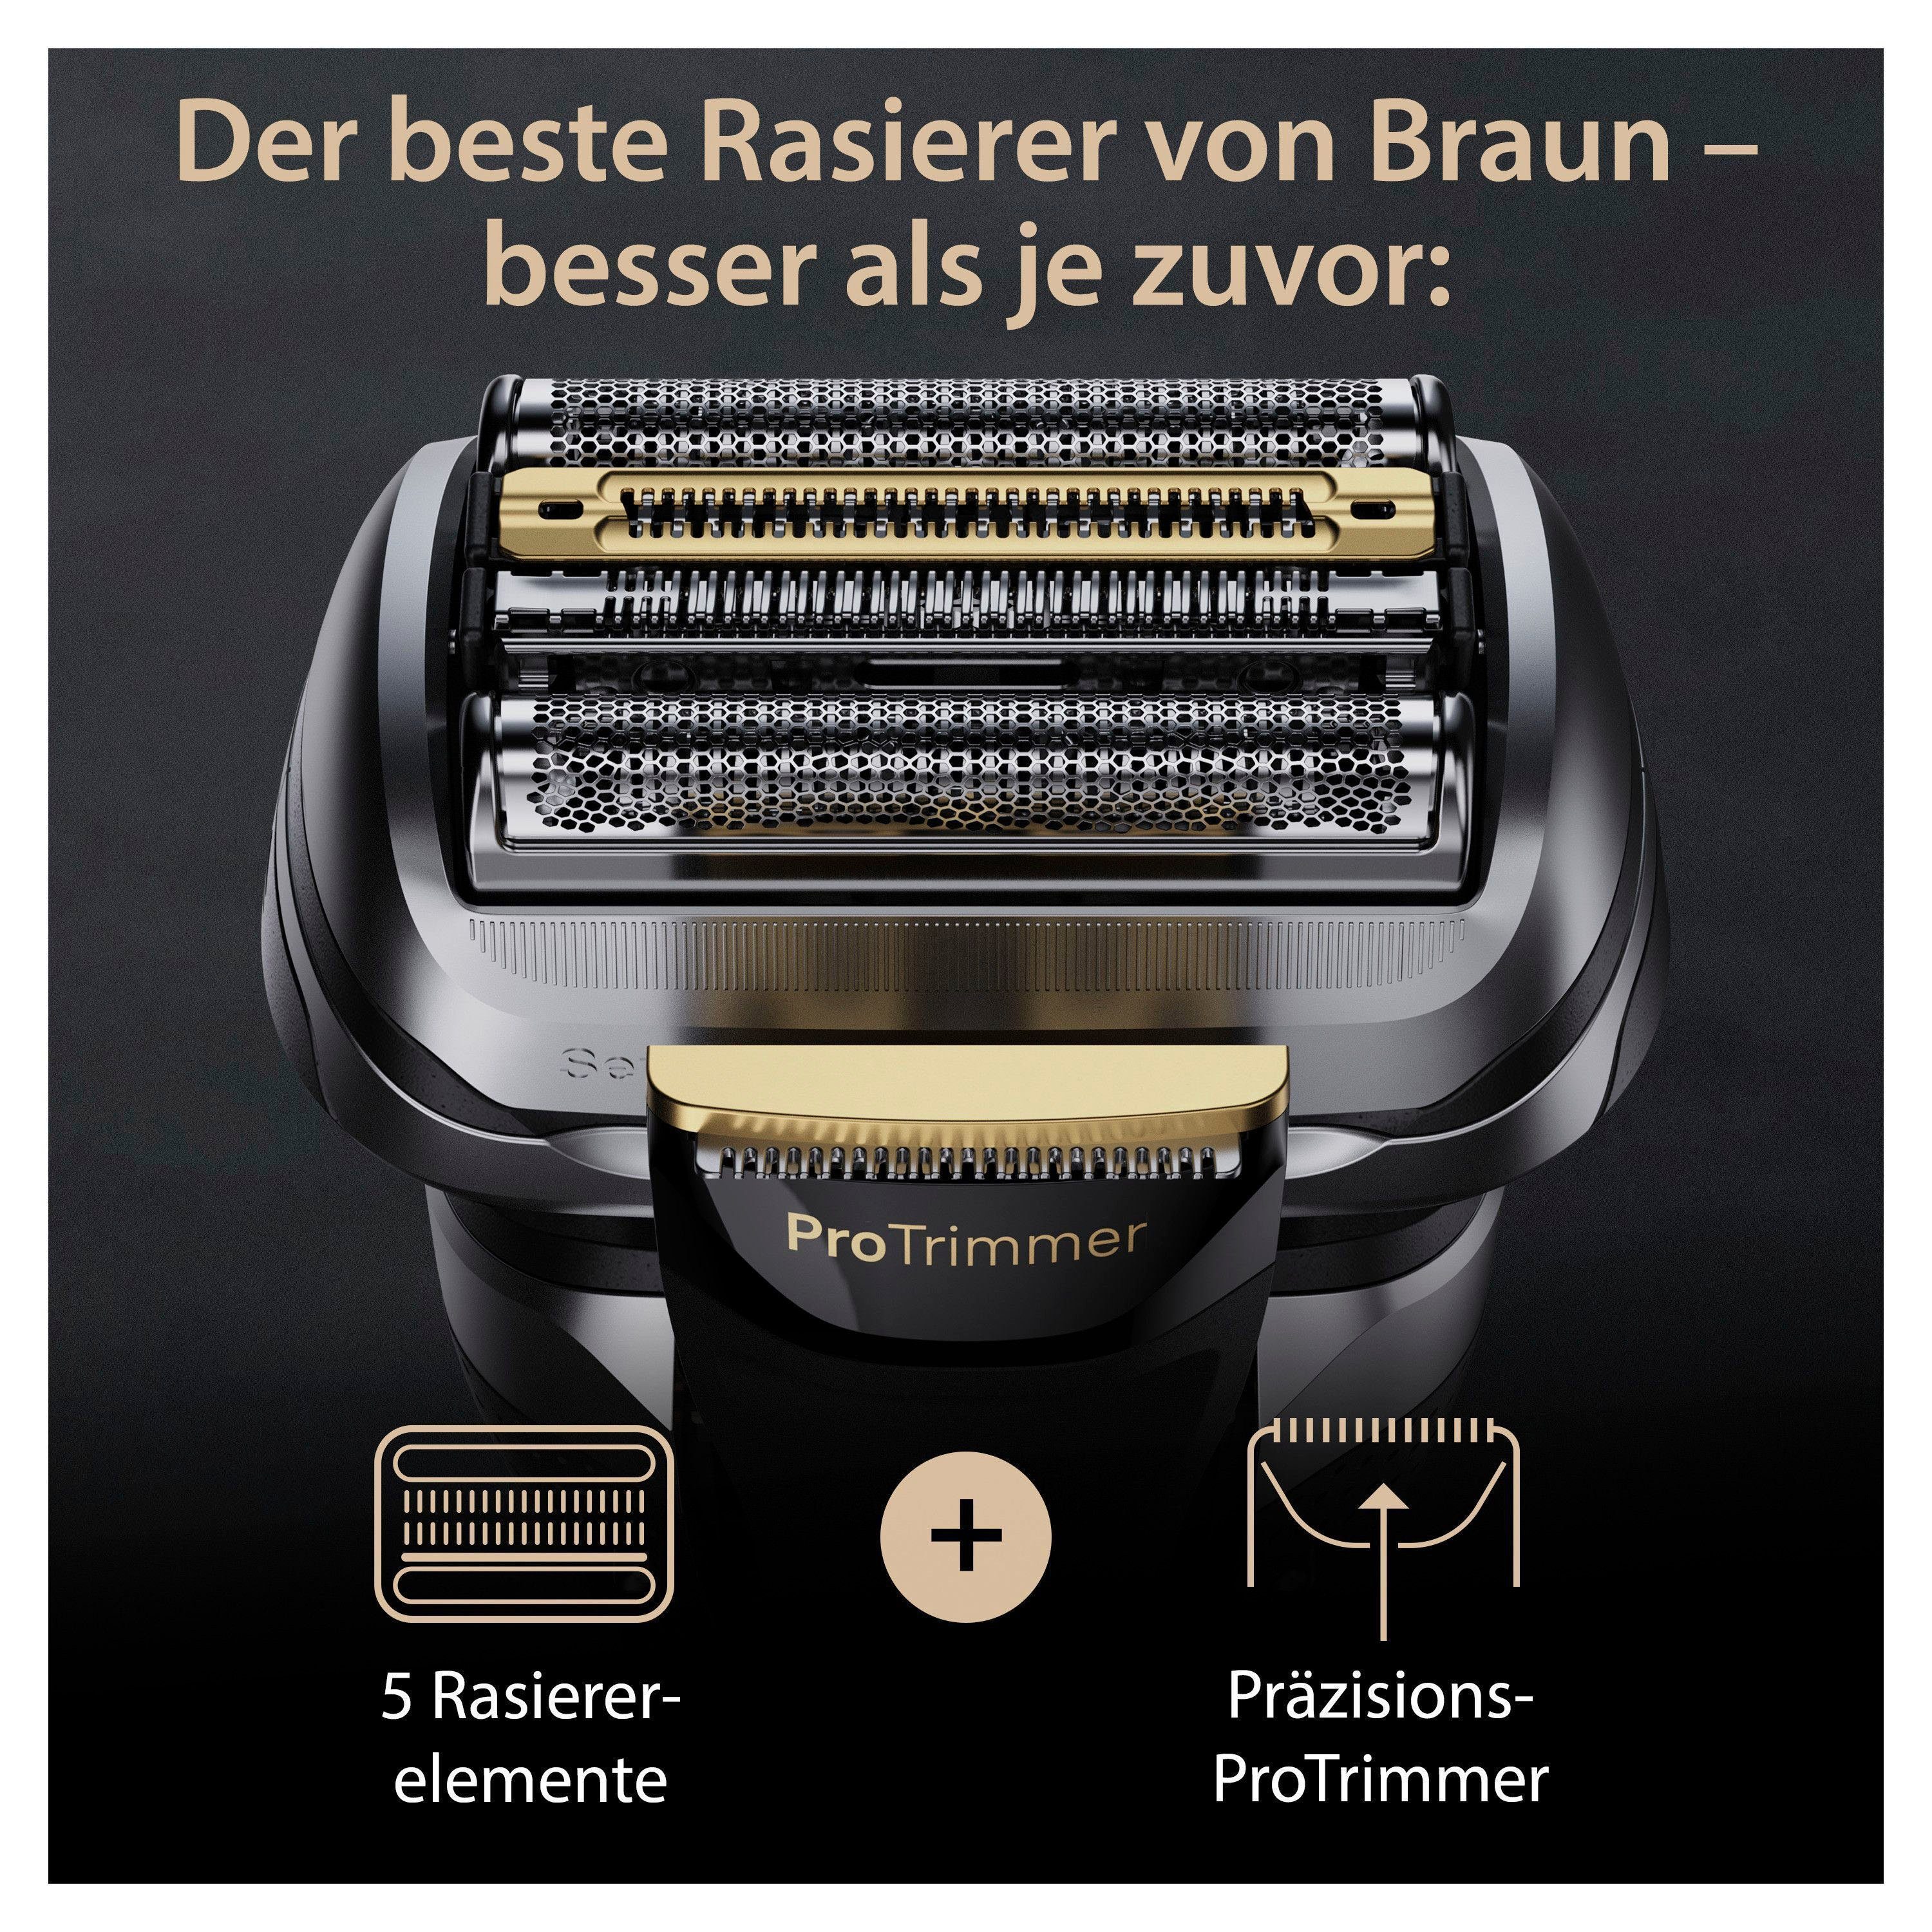 Elektrorasierer ProTrimmer Precision Braun 9 Reinigungsstation, 9567cc, Pro+ Series